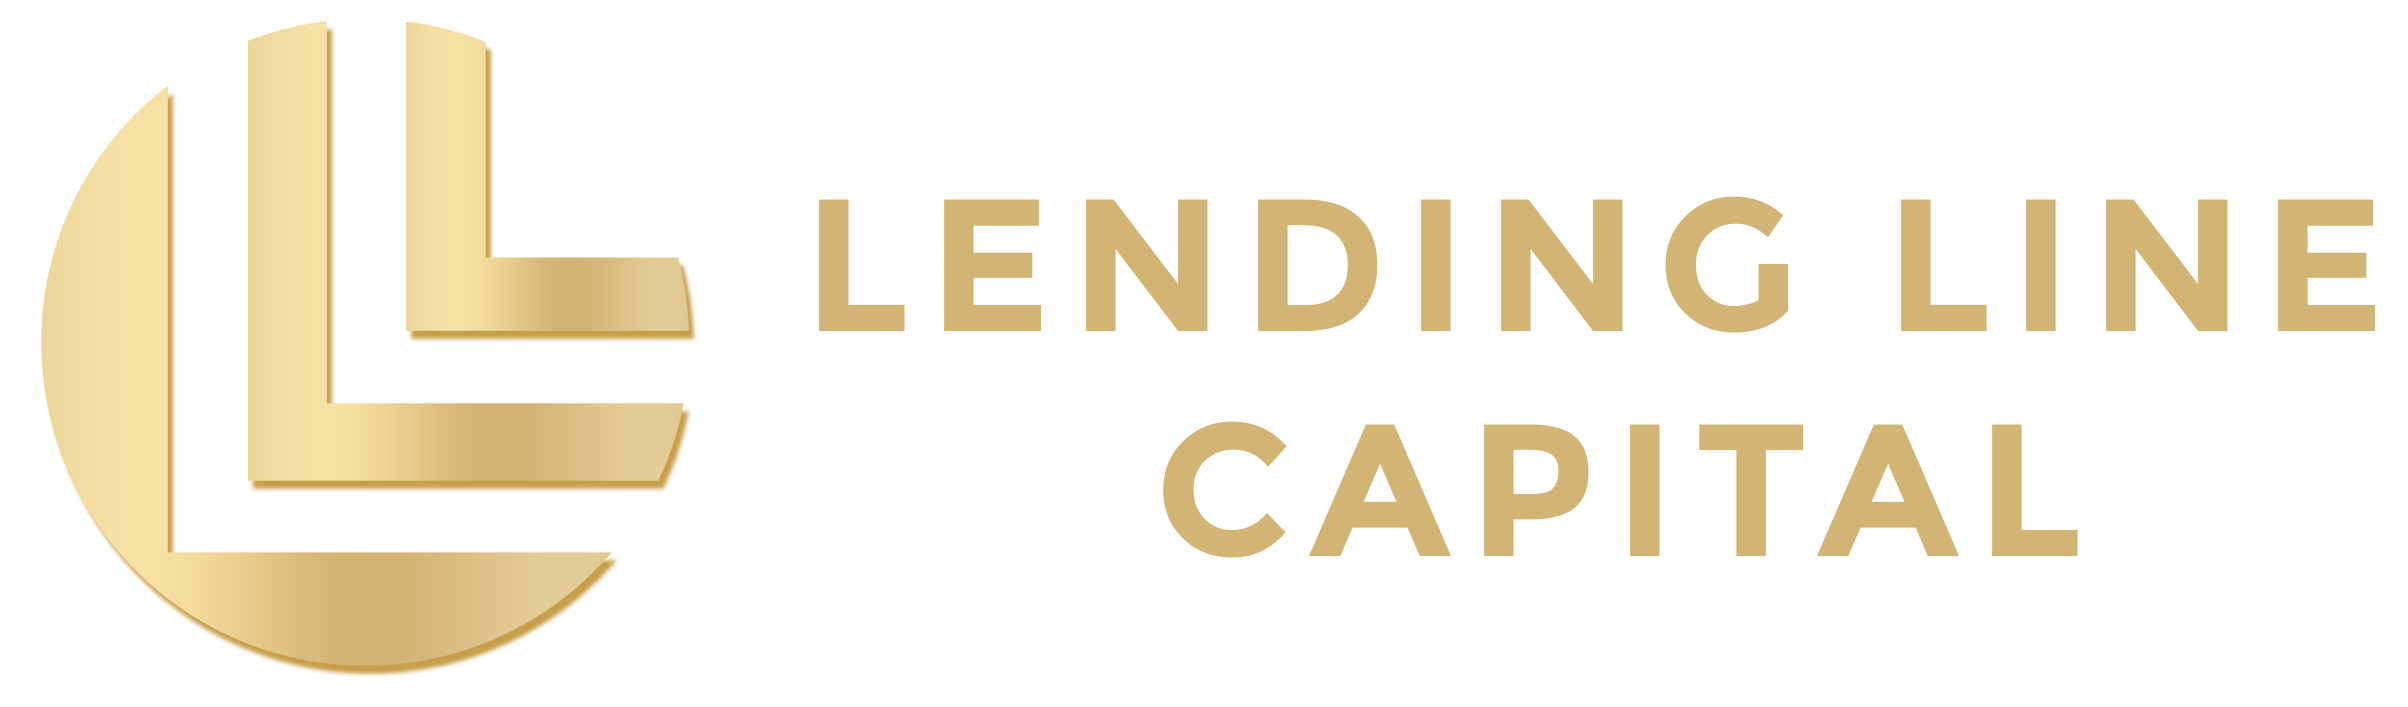 Lending Line Capital